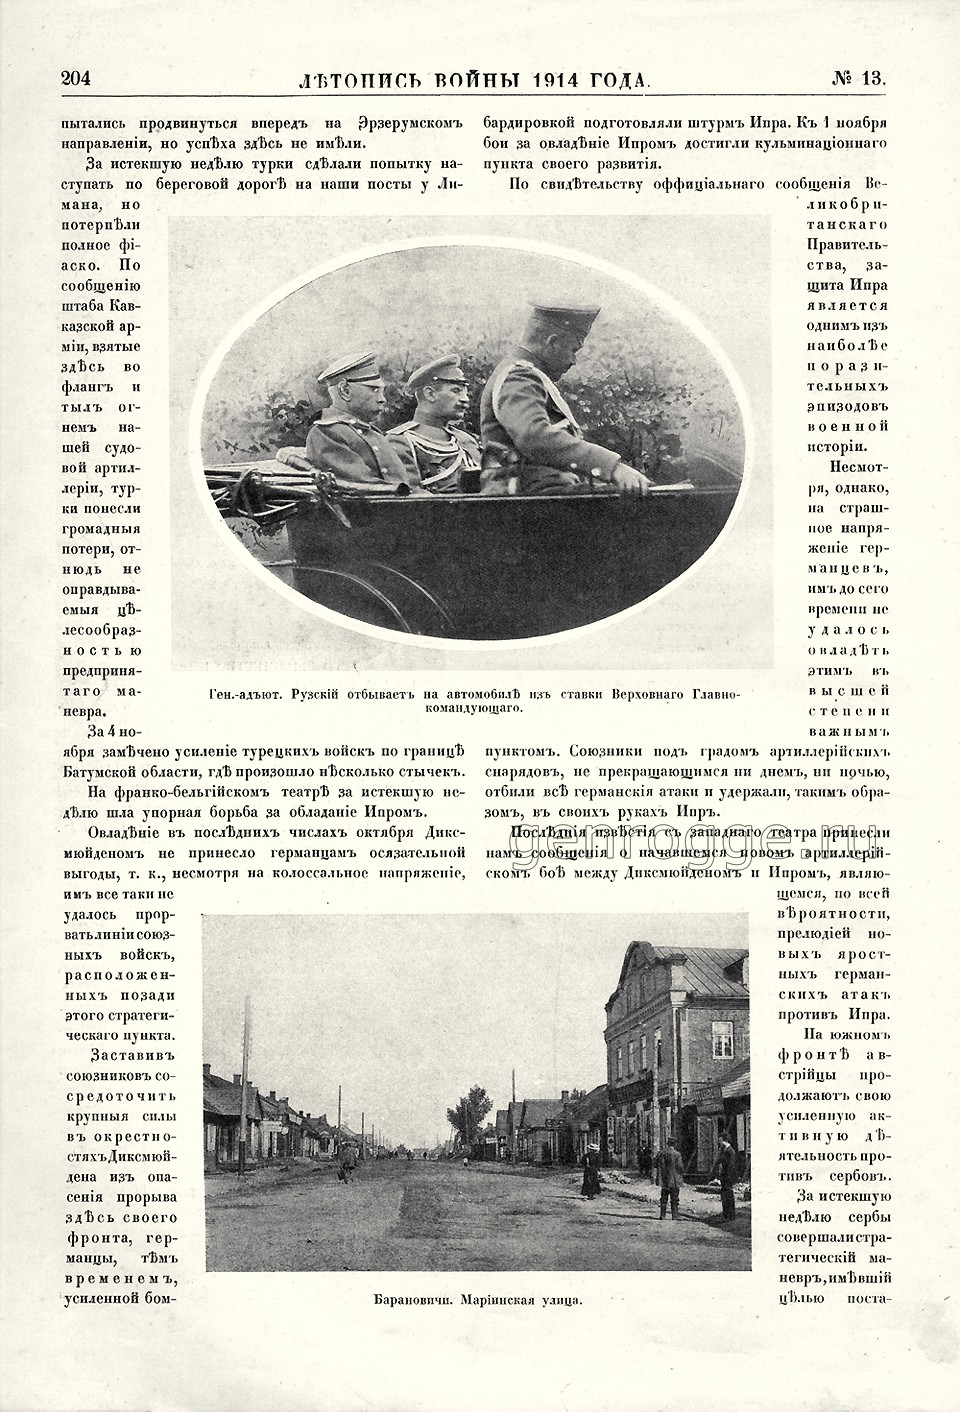   1914 . `1914 .,  13, . 204